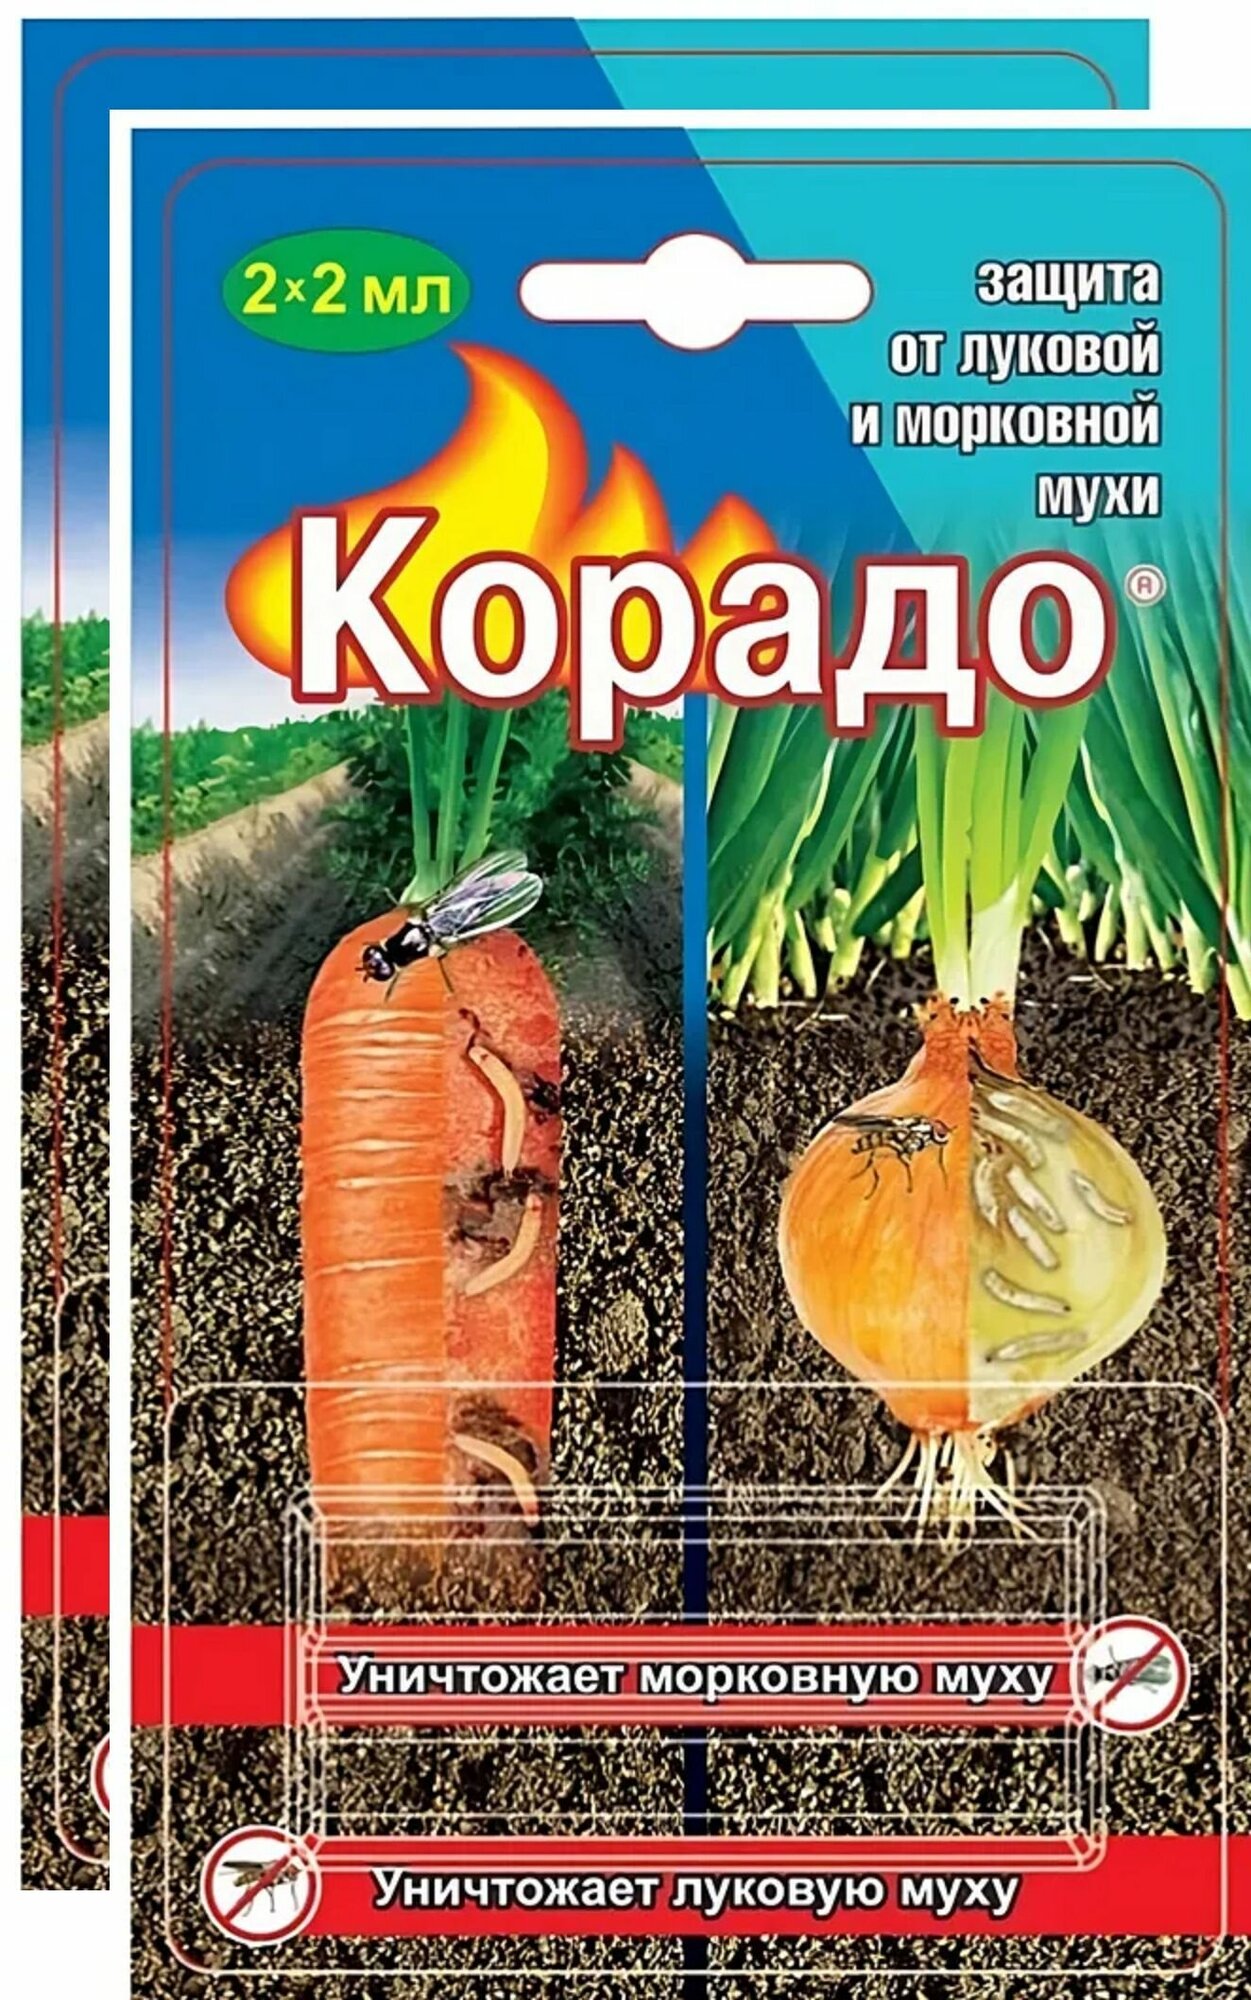 Корадо, средство от луковой и морковной мухи (4 ампулы по 2 мл). Для сезонной обработки картофеля, плодовых или овощных культур